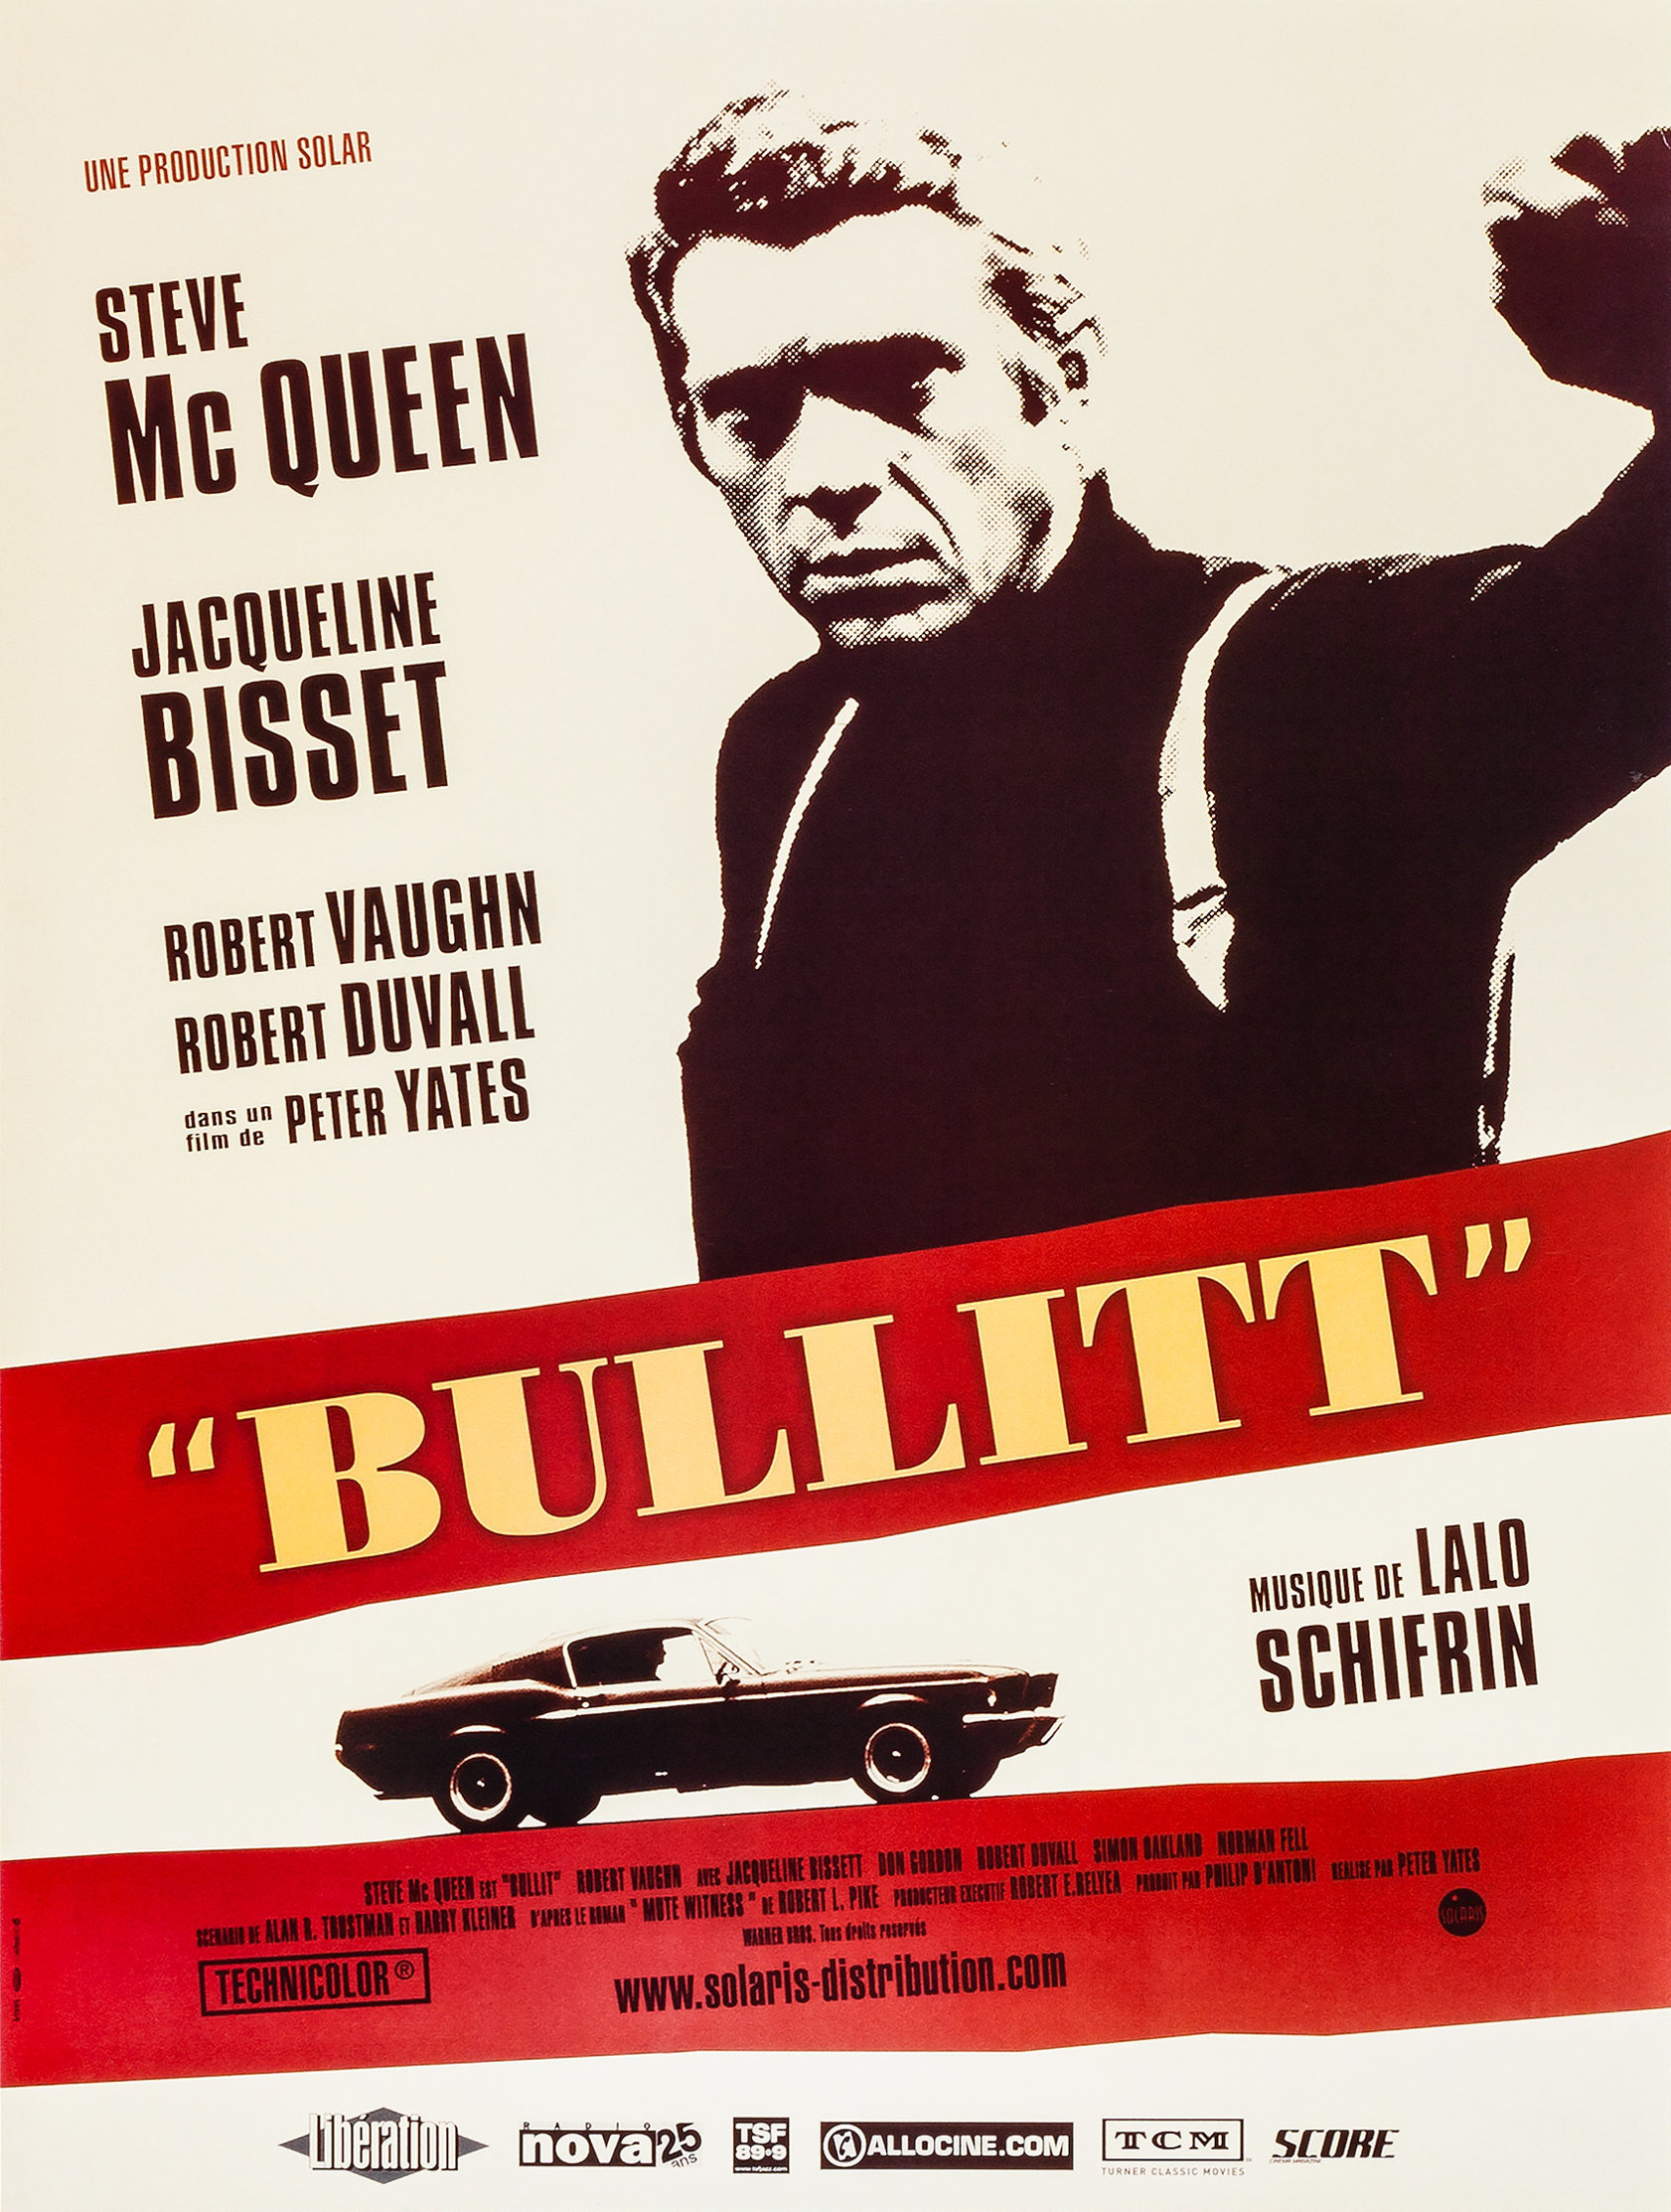 Mega Sized Movie Poster Image for Bullitt (#19 of 19)